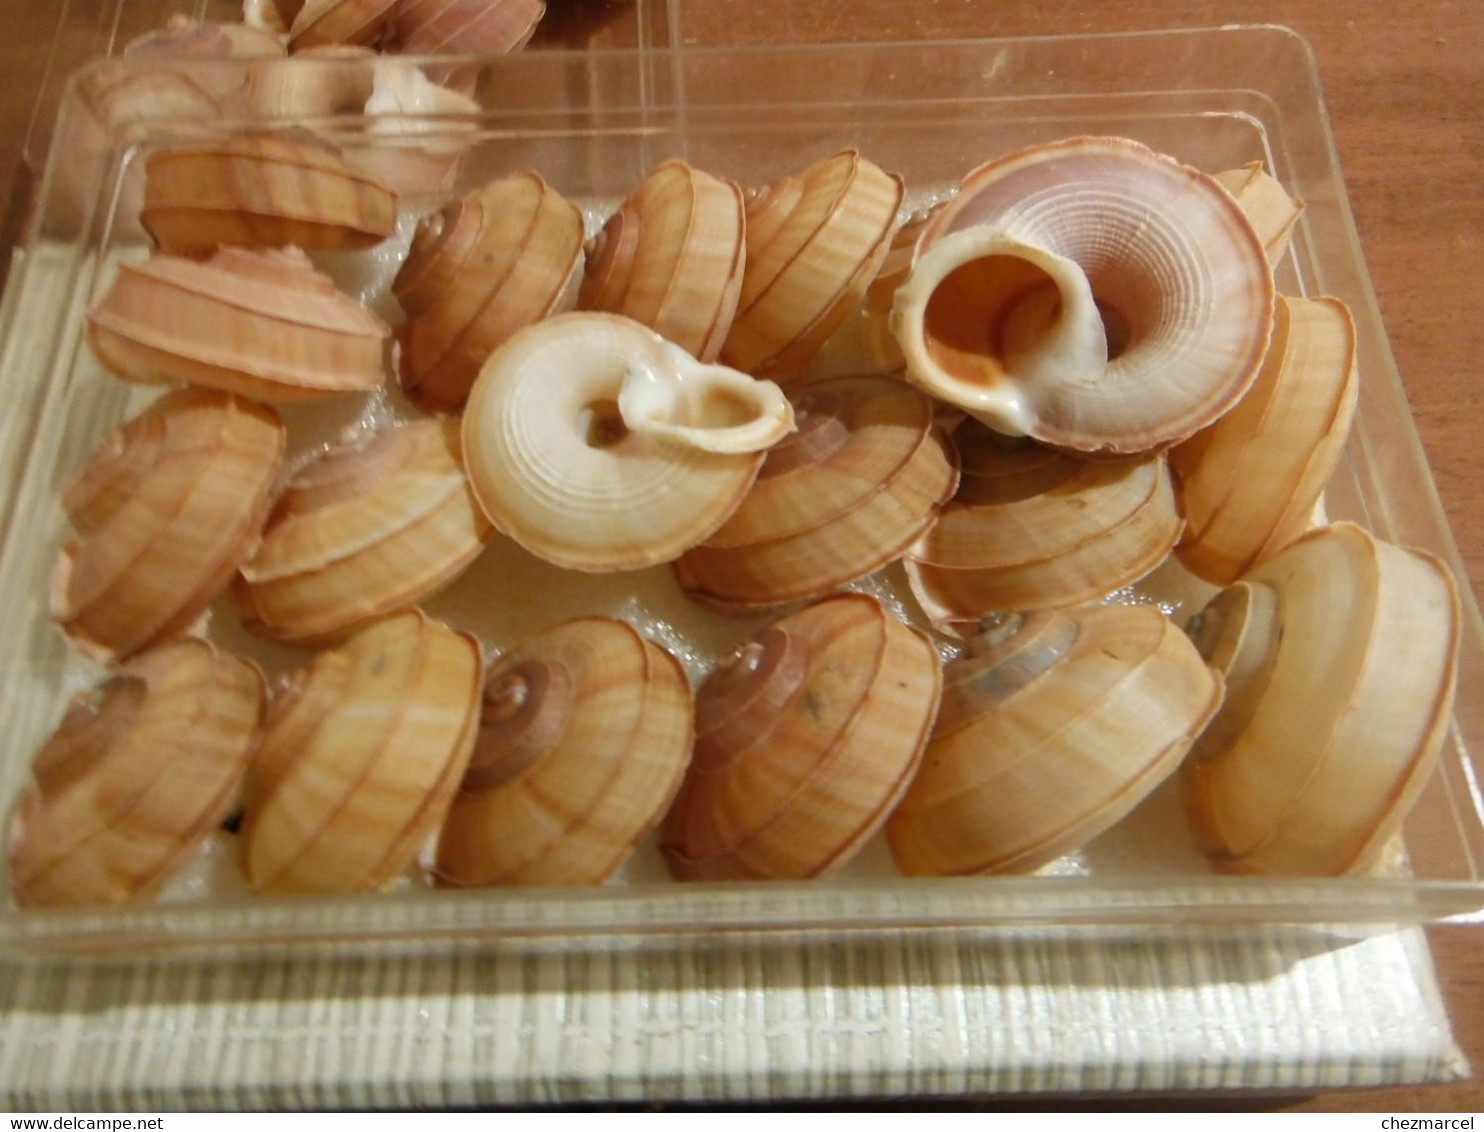 rare lot de 20 escargots terrestre tropidophora cuvieirana diego-suarez 42/50 mm